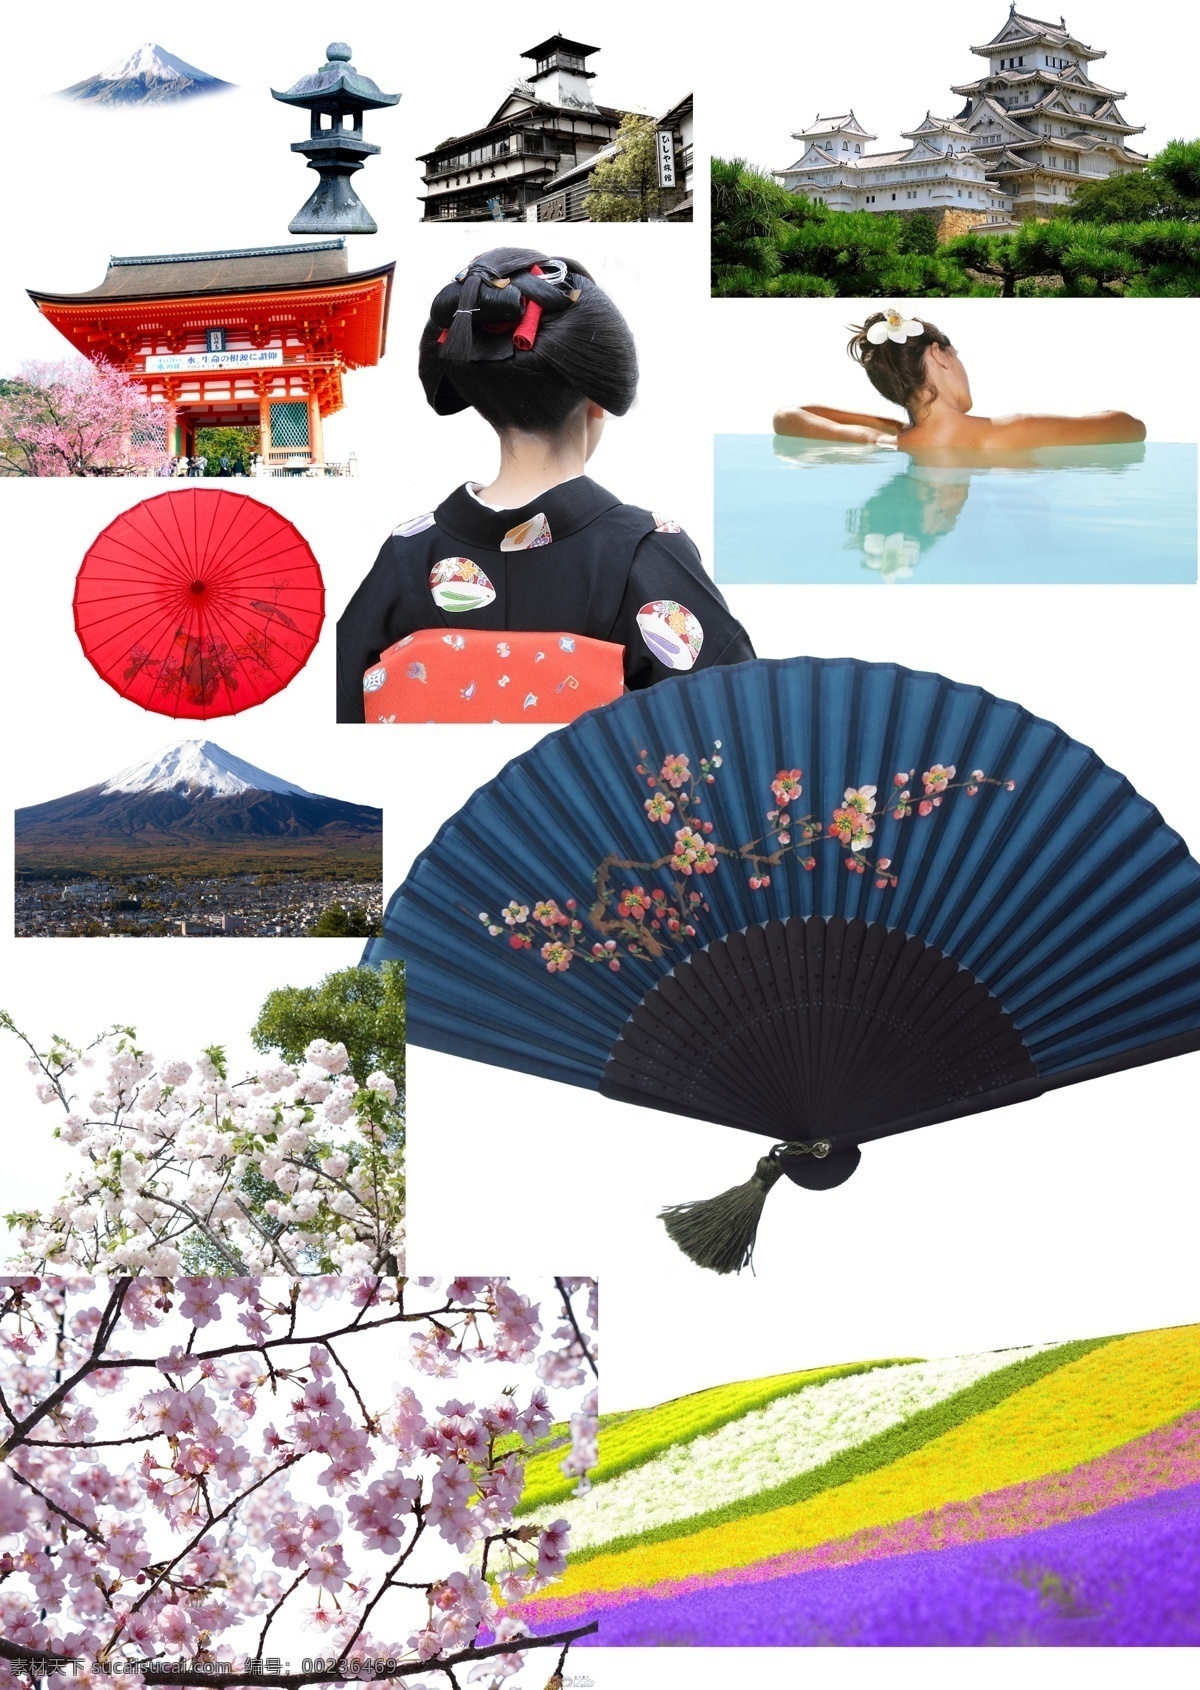 日本旅游 日本 旅游 日本建筑 富士山 樱花 艺妓 扇子 伞 png集合 日本素材 日本景点 旅游景点 白色